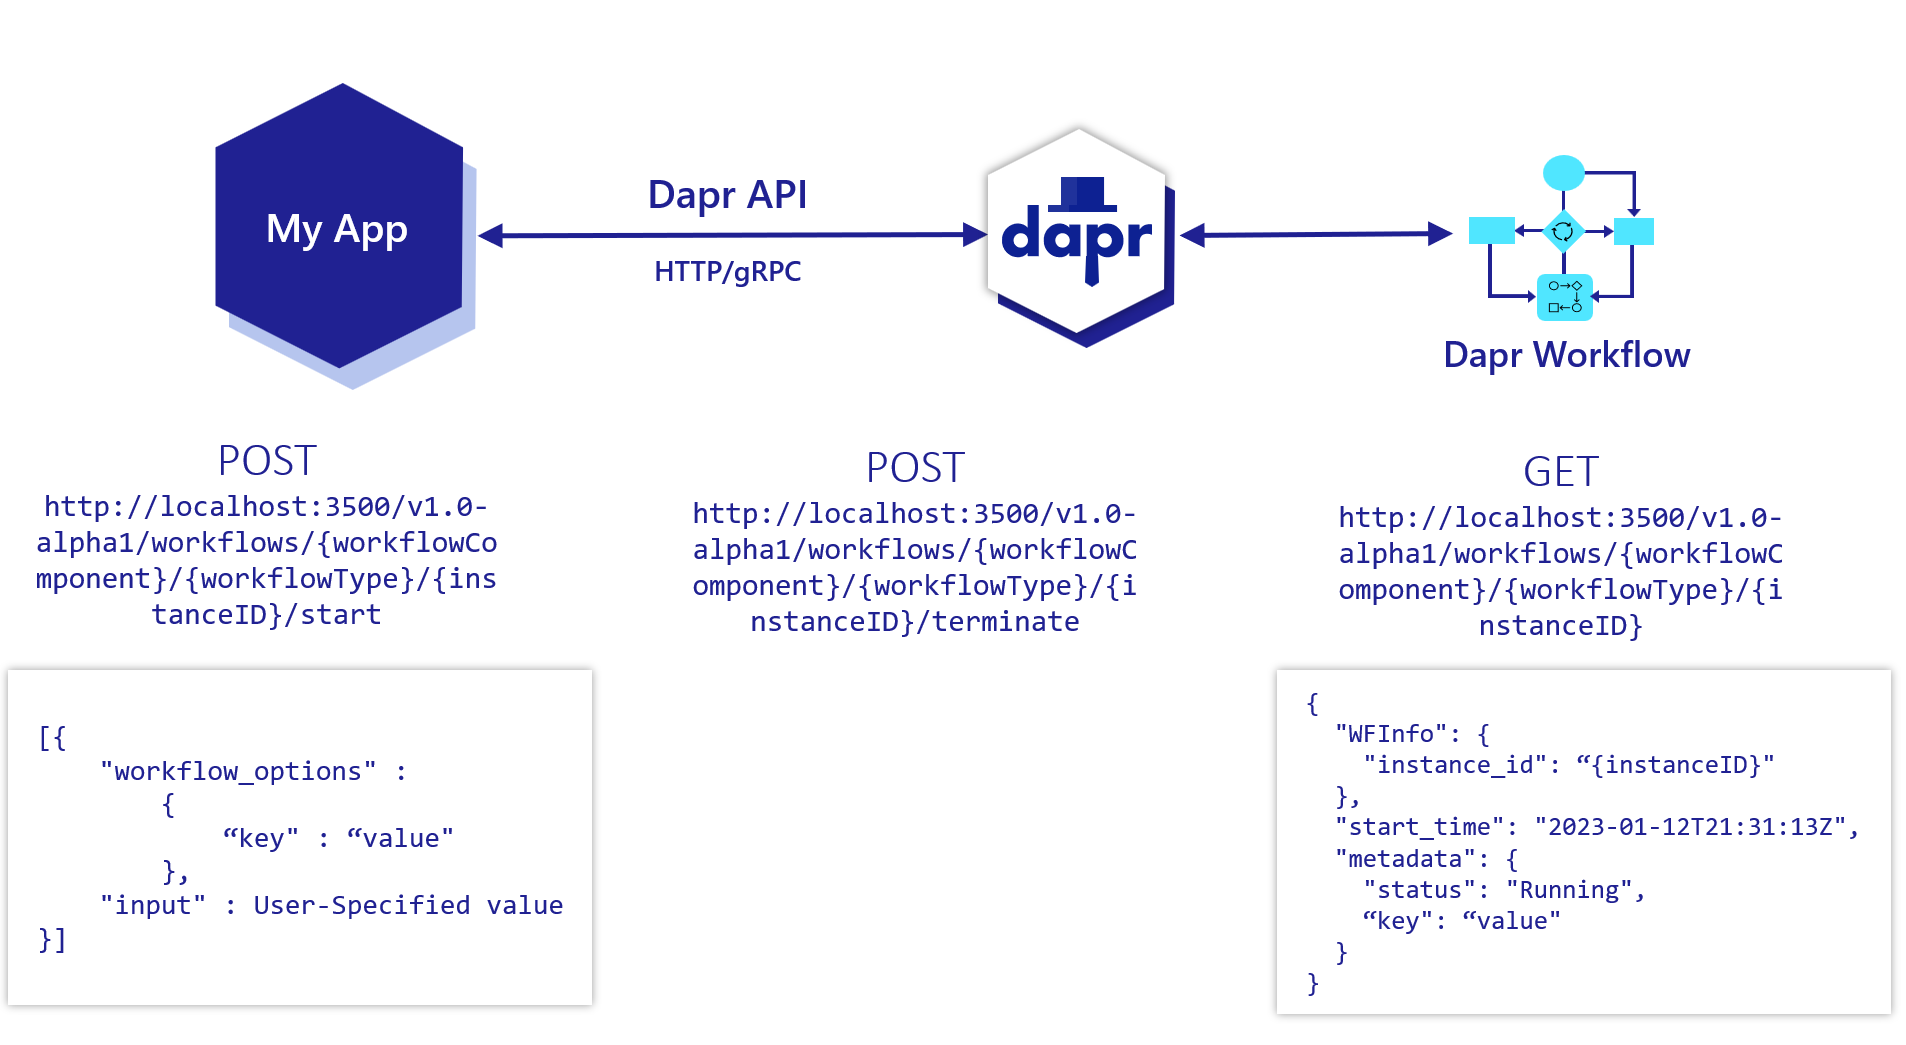 Diagram showing basics of Dapr Workflow